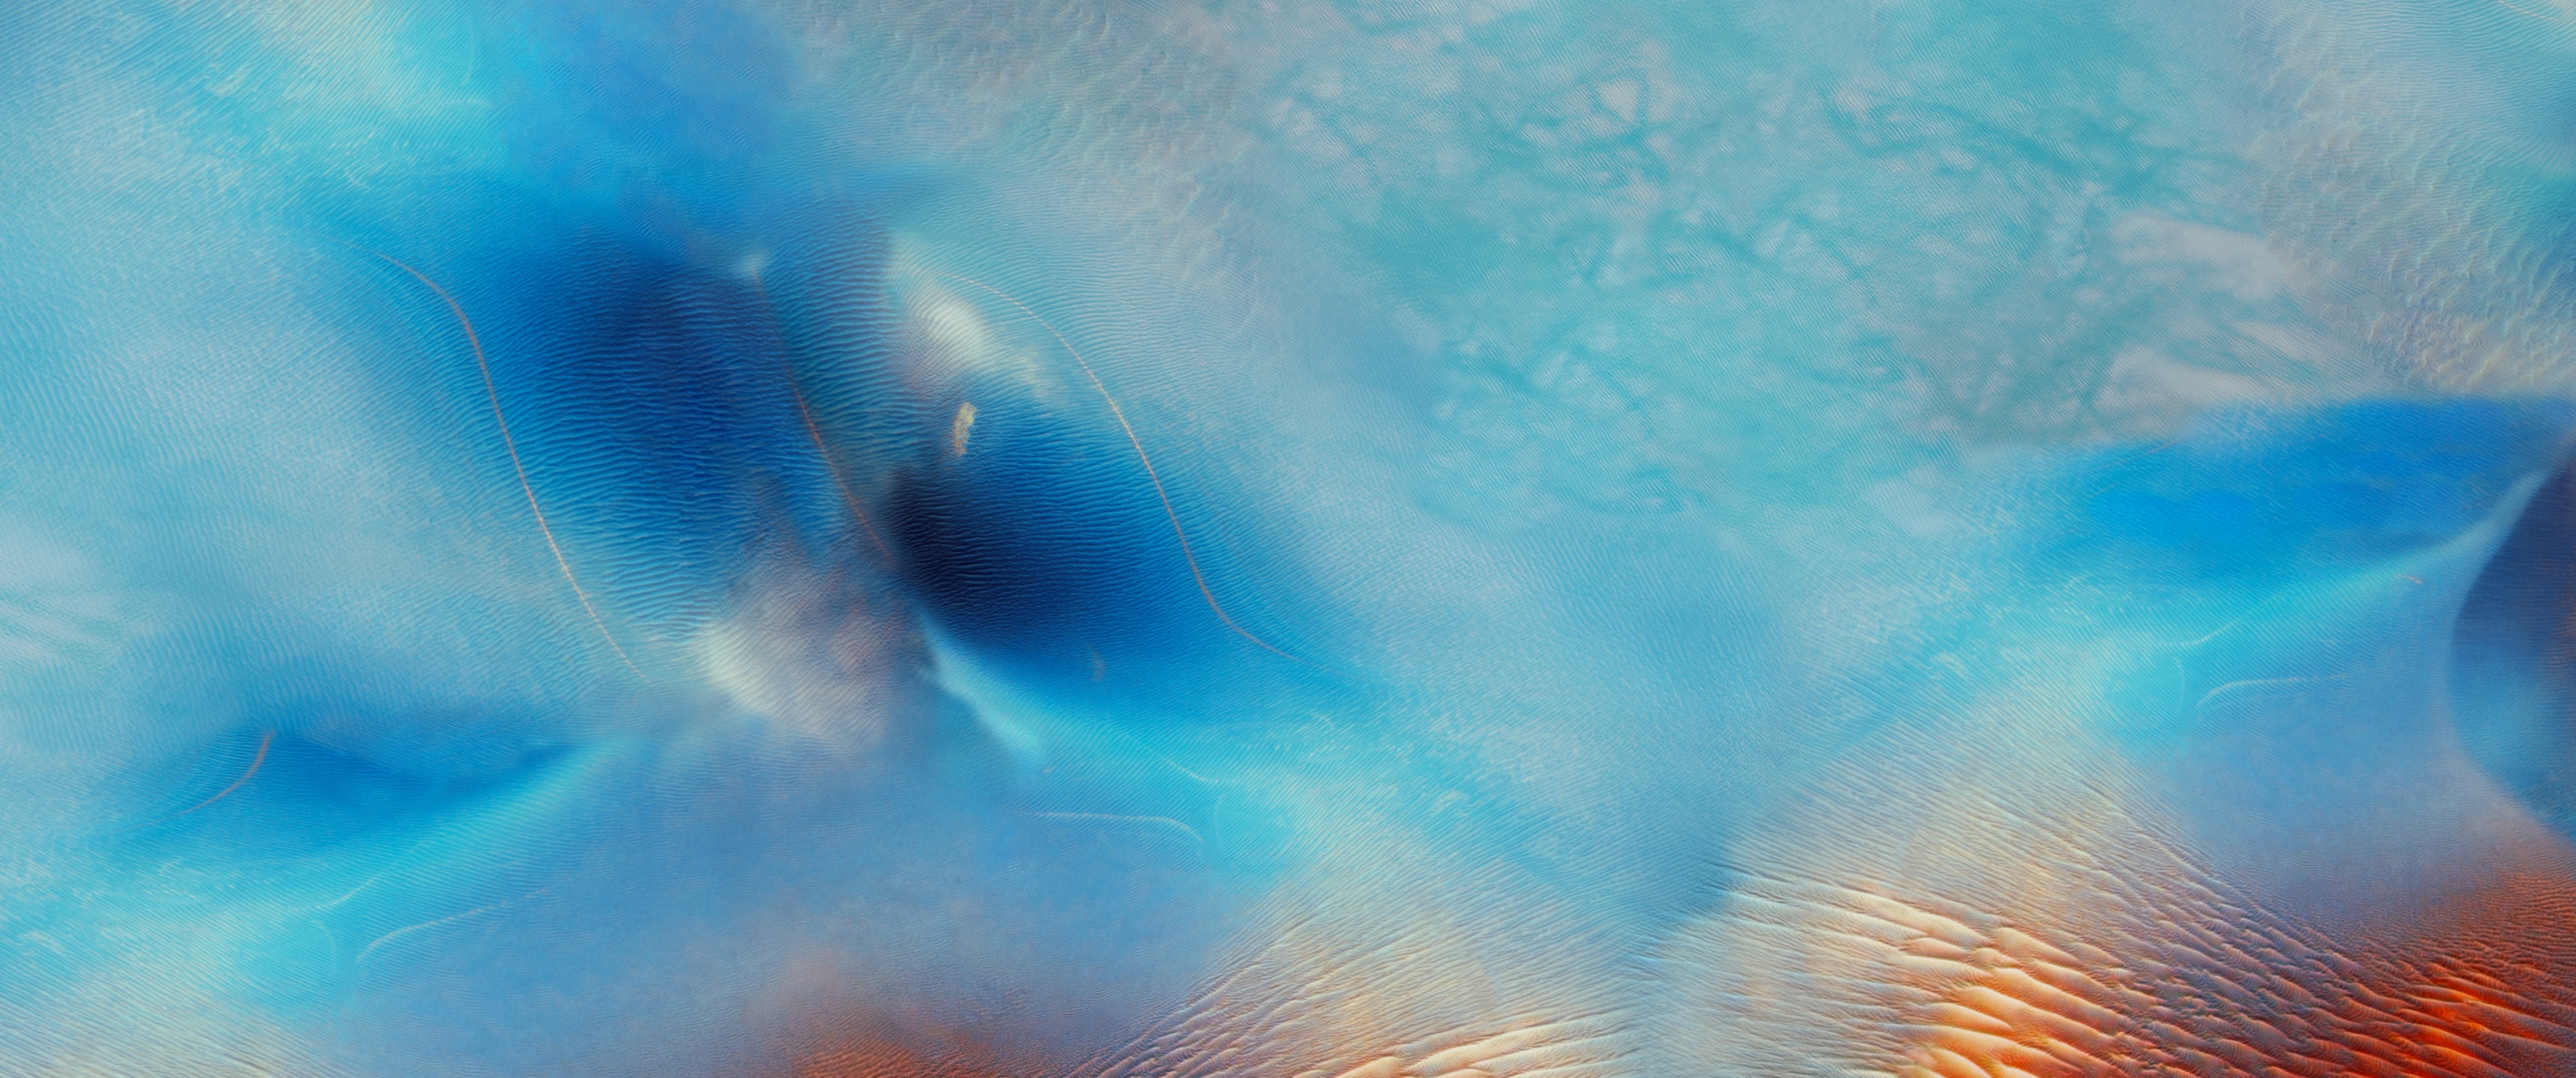 iOS 9 Wallpaper 4K, Desert, Blue, Waves, Abstract, #6418